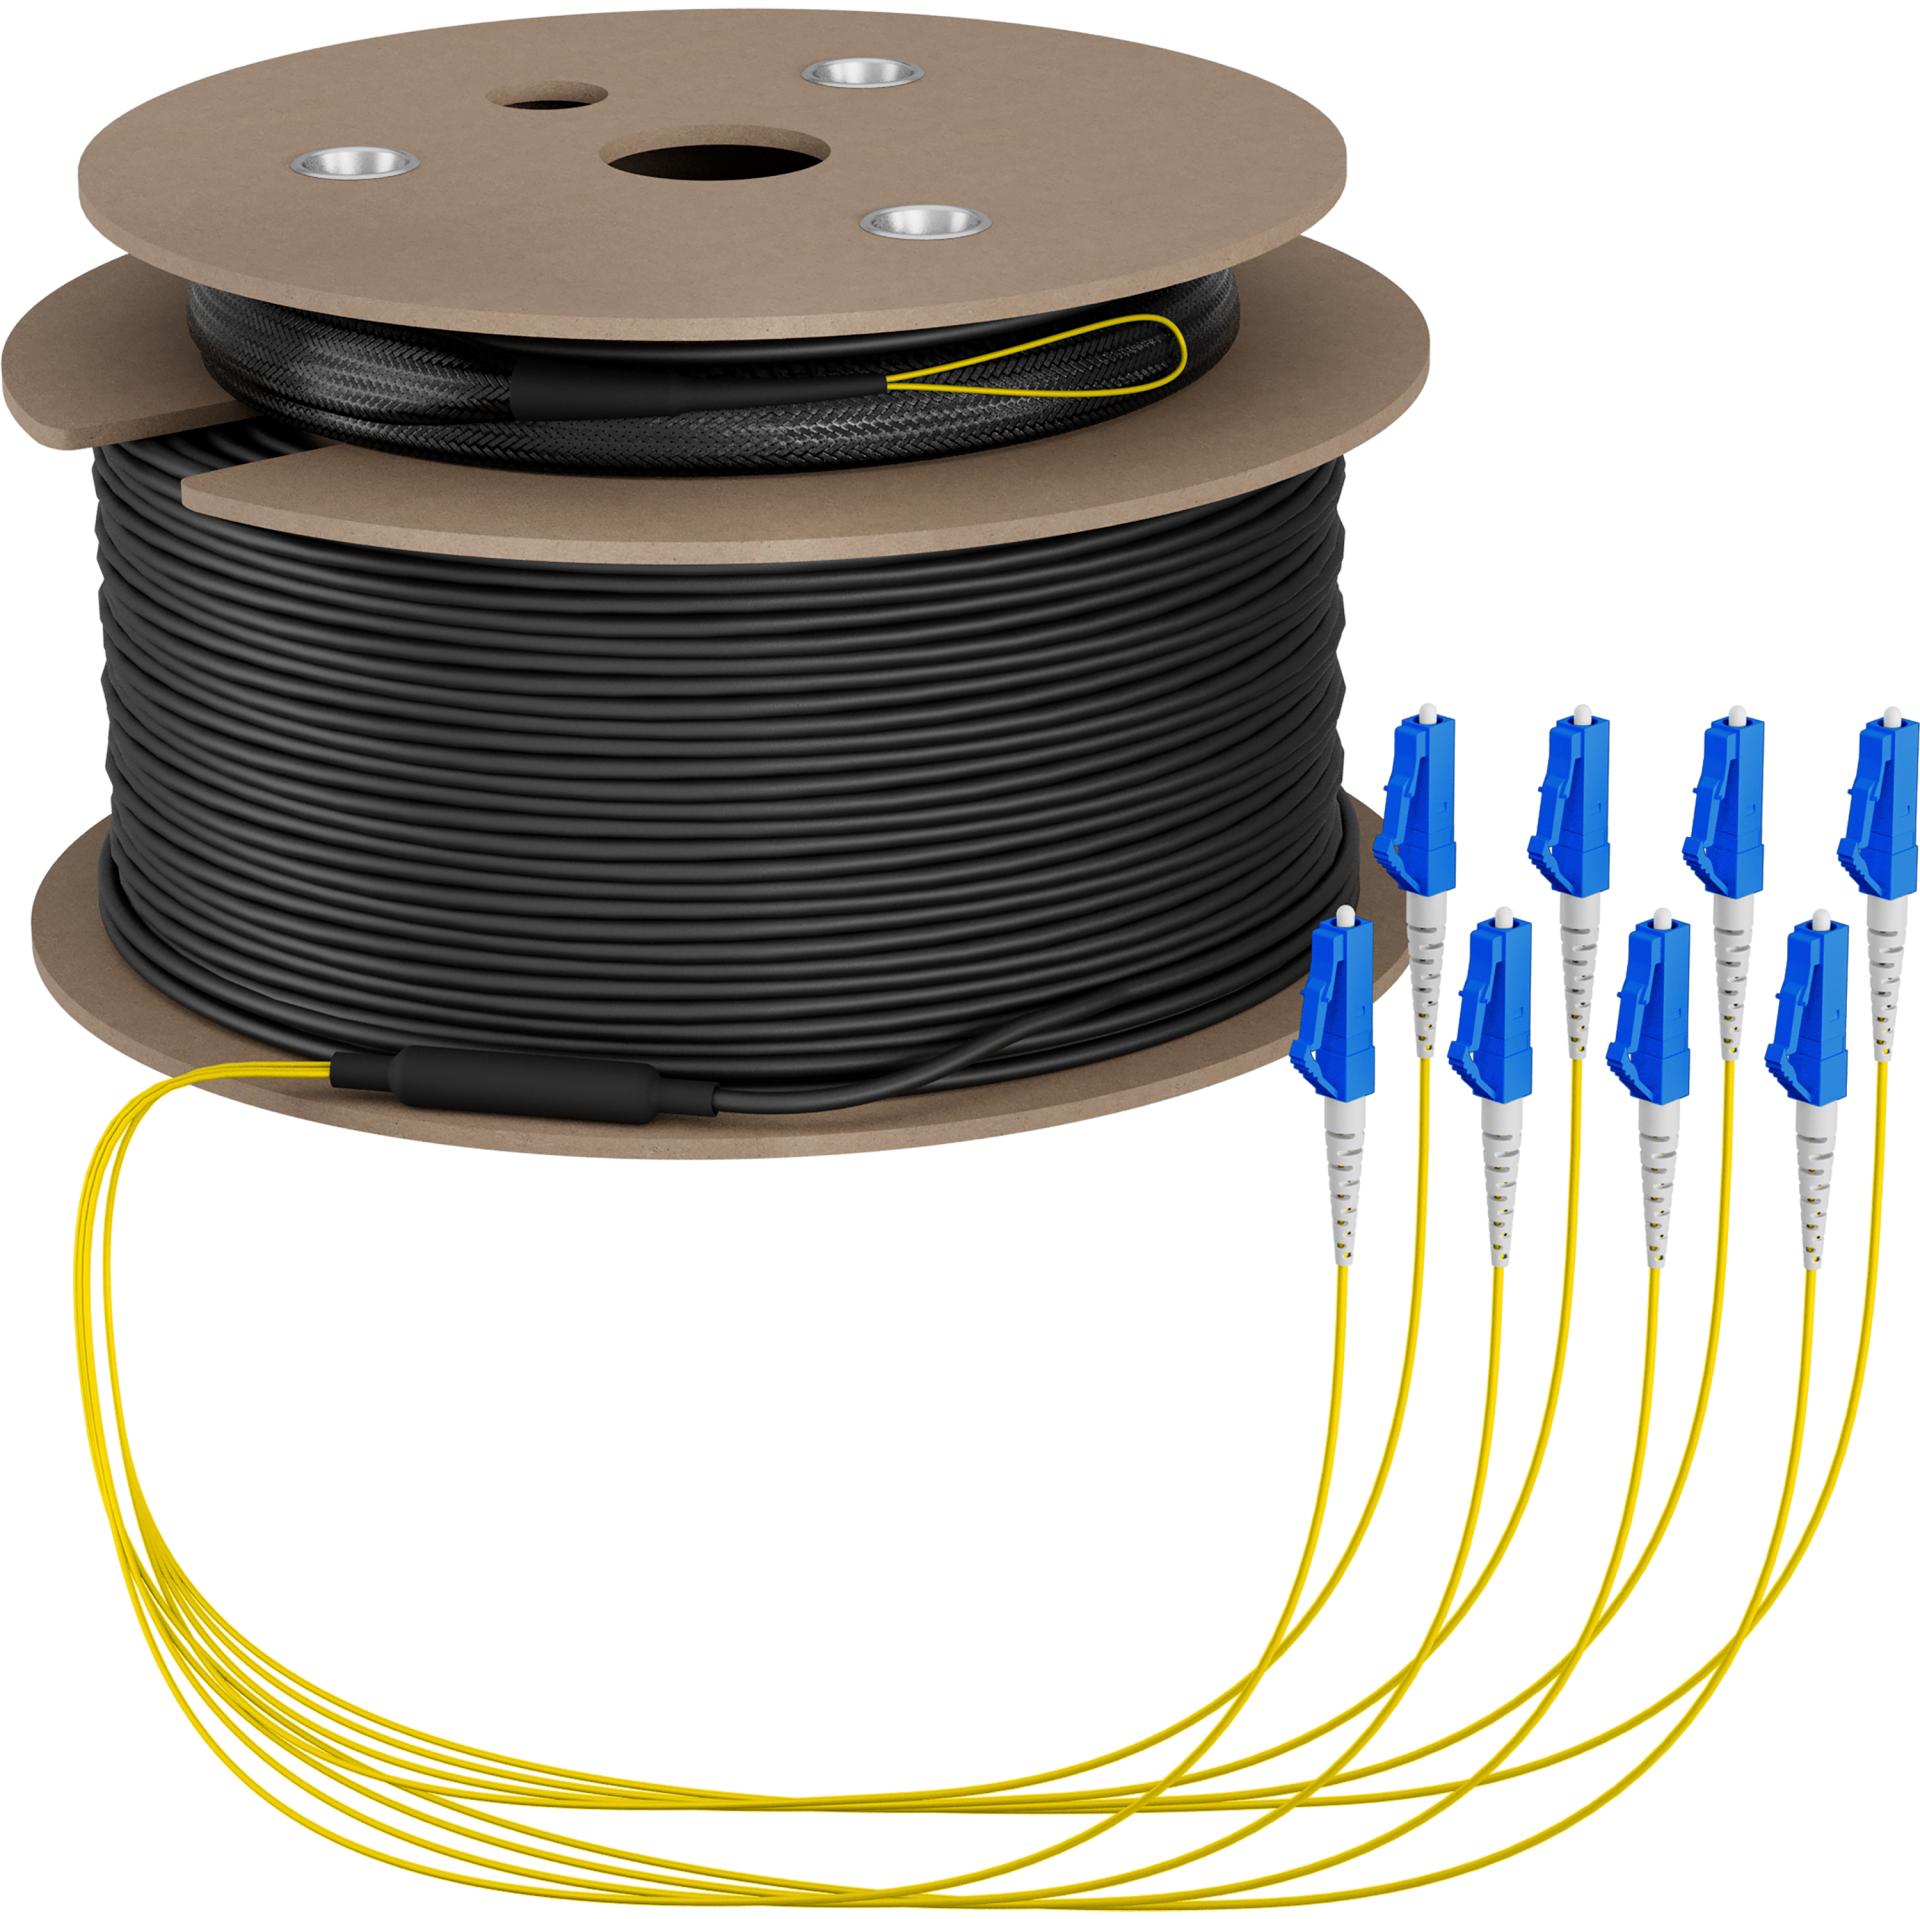 Trunk cable U-DQ(ZN)BH OS2 8E (1x8) LC-LC,190m Dca LSZH